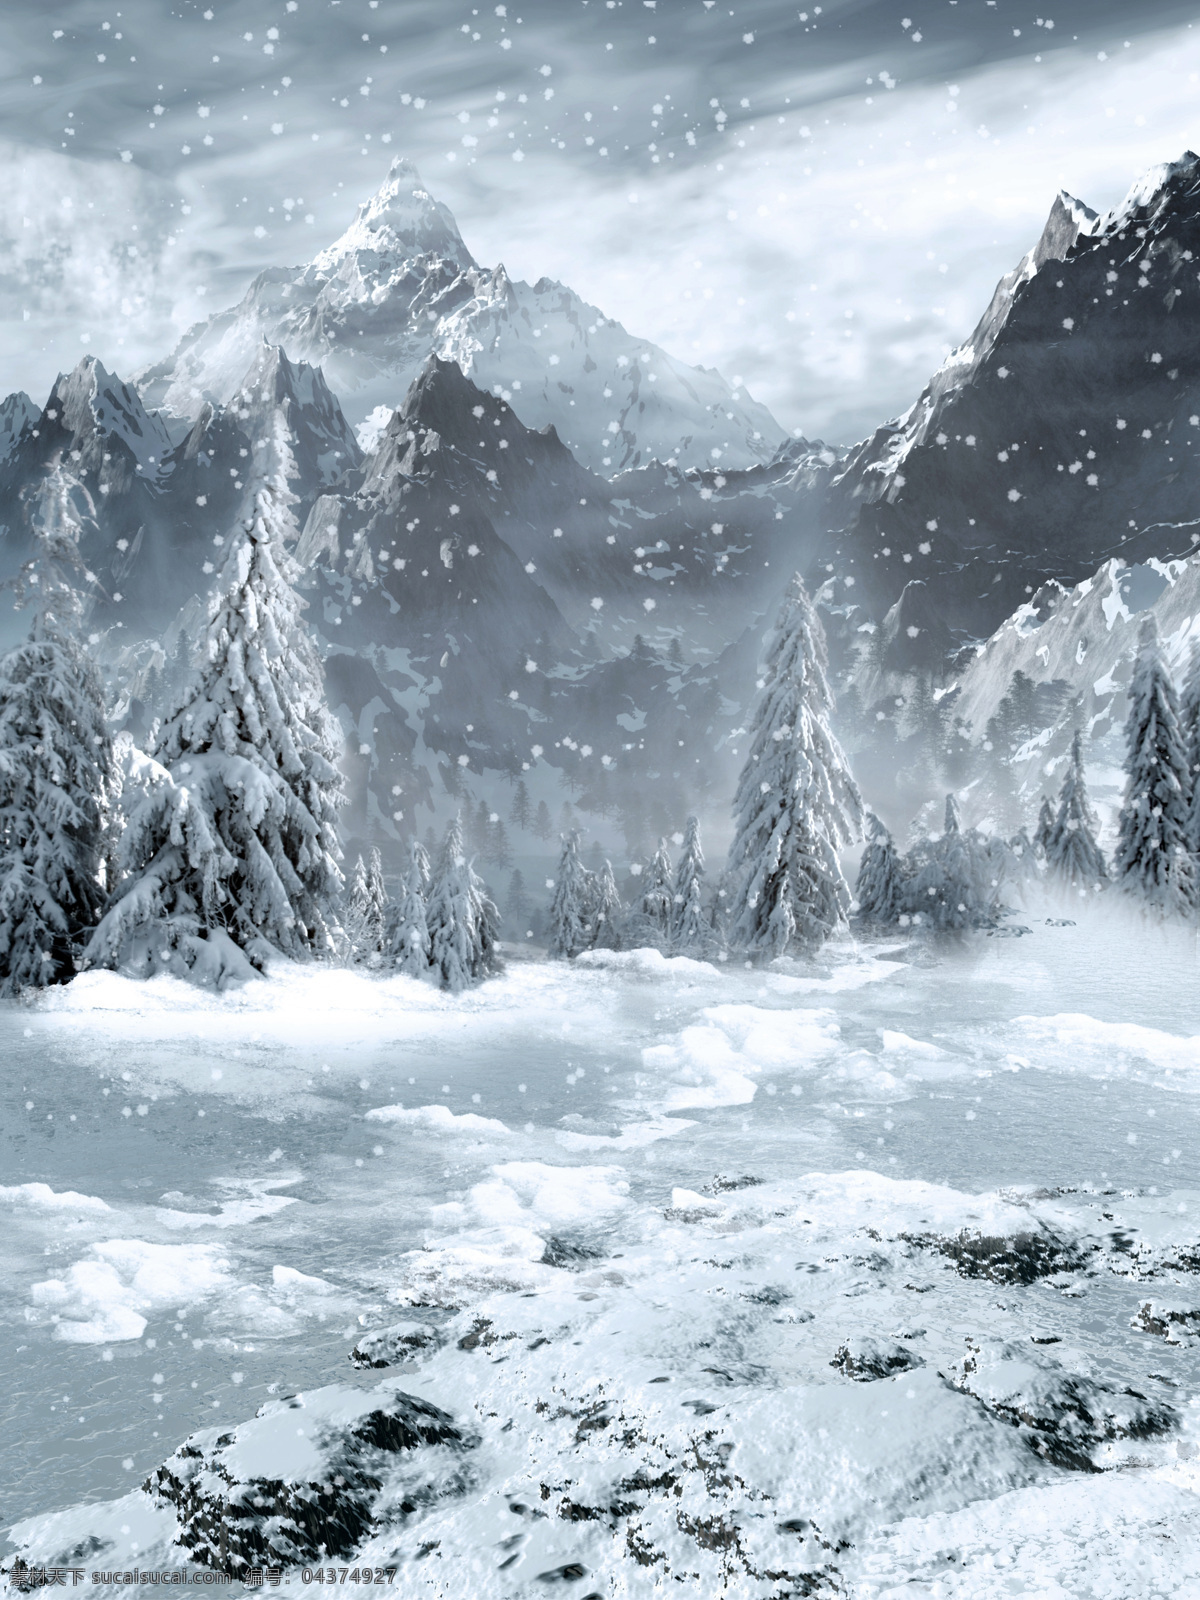 冬季雪景 cg画面 游戏场景 冬季 雪景 高清图 森林 冬季美景 雪 自然风景 自然风光 动漫动画 风景漫画